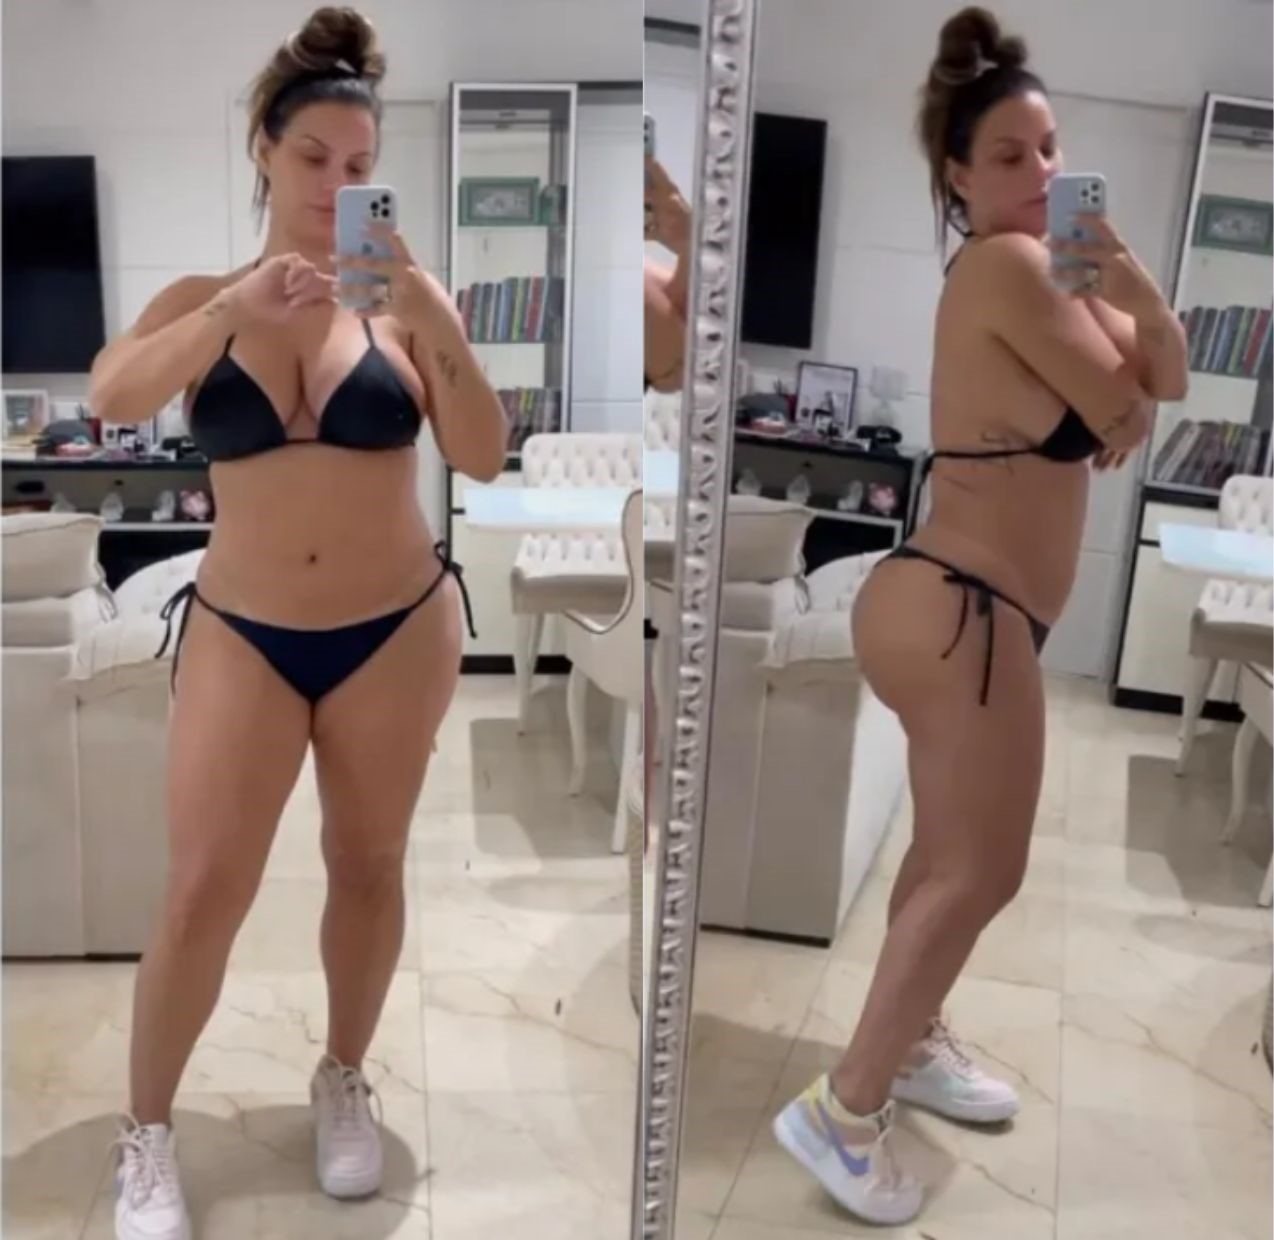 Carol Dias desabafa após engordar 15 kg; veja antes e depois. Foto: Reprodução